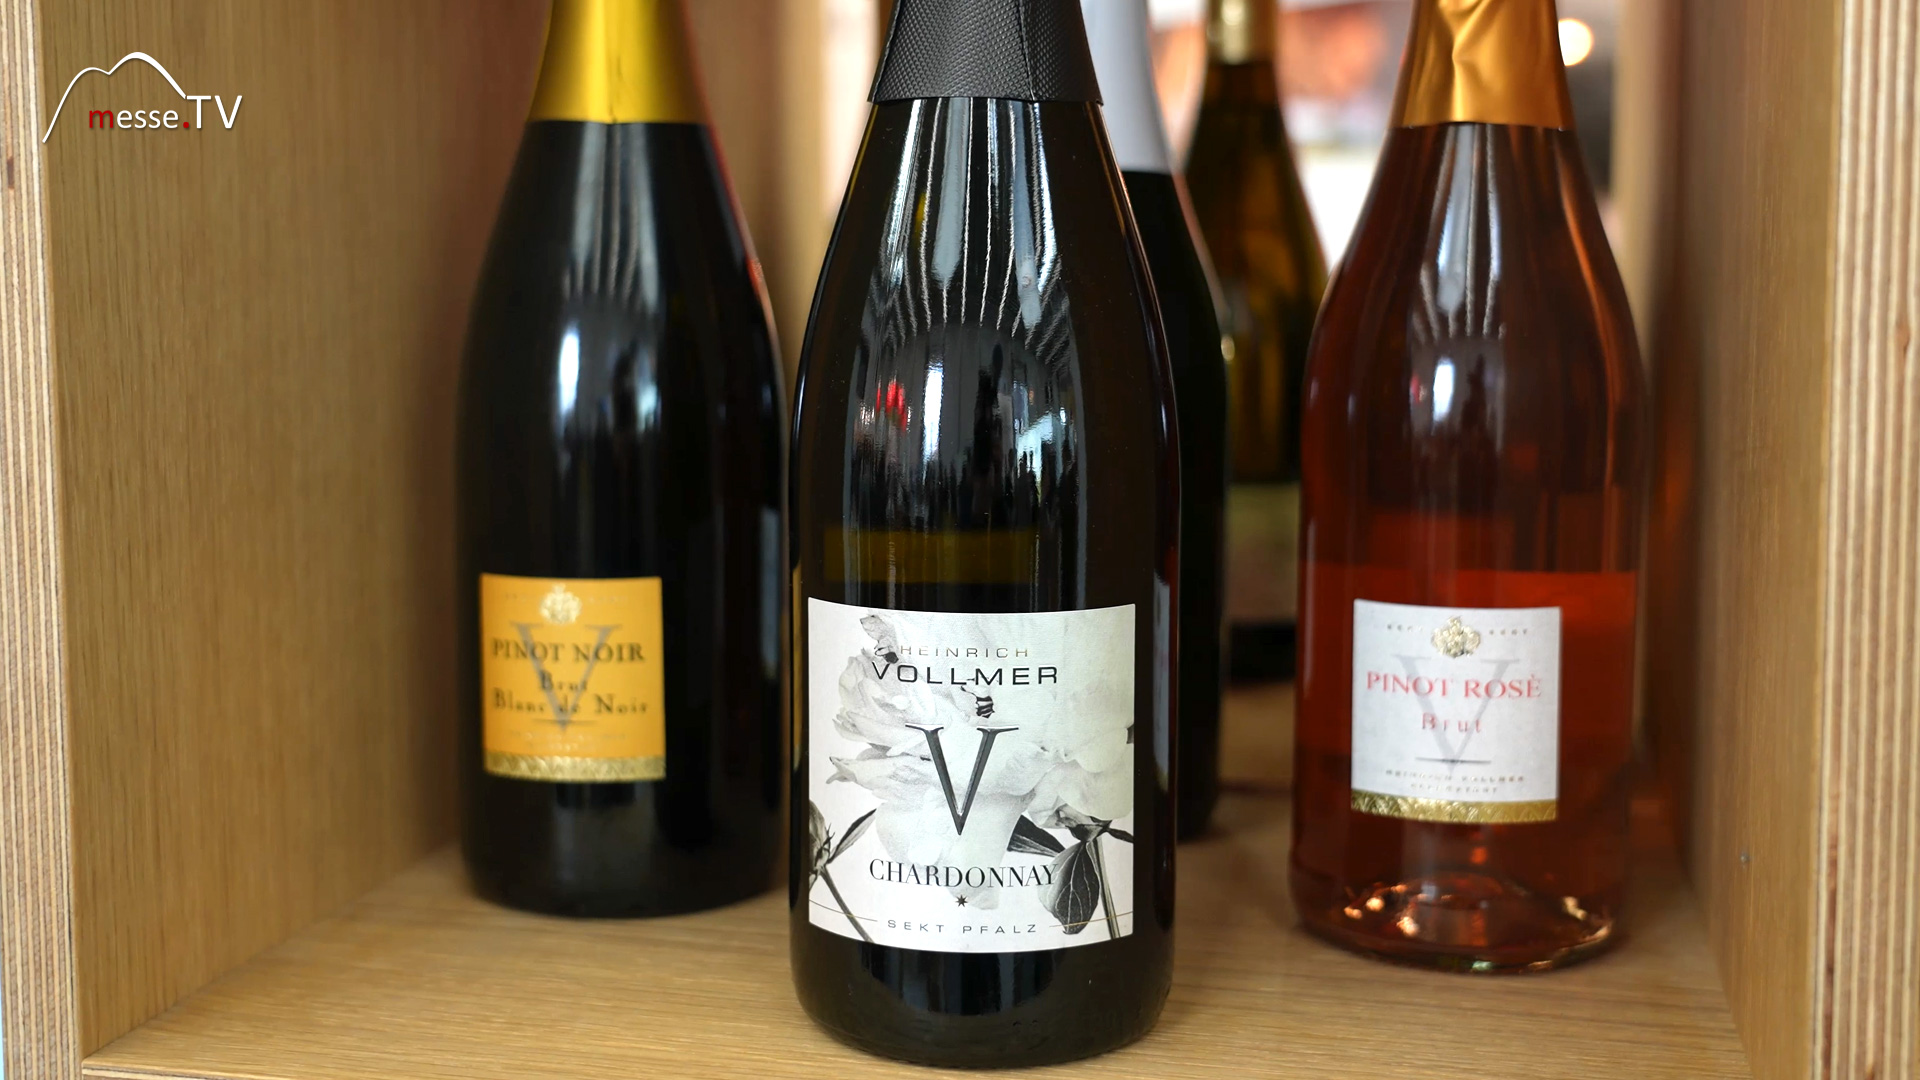 Chardonnay Sekt Pfalz Weingut Vollmer